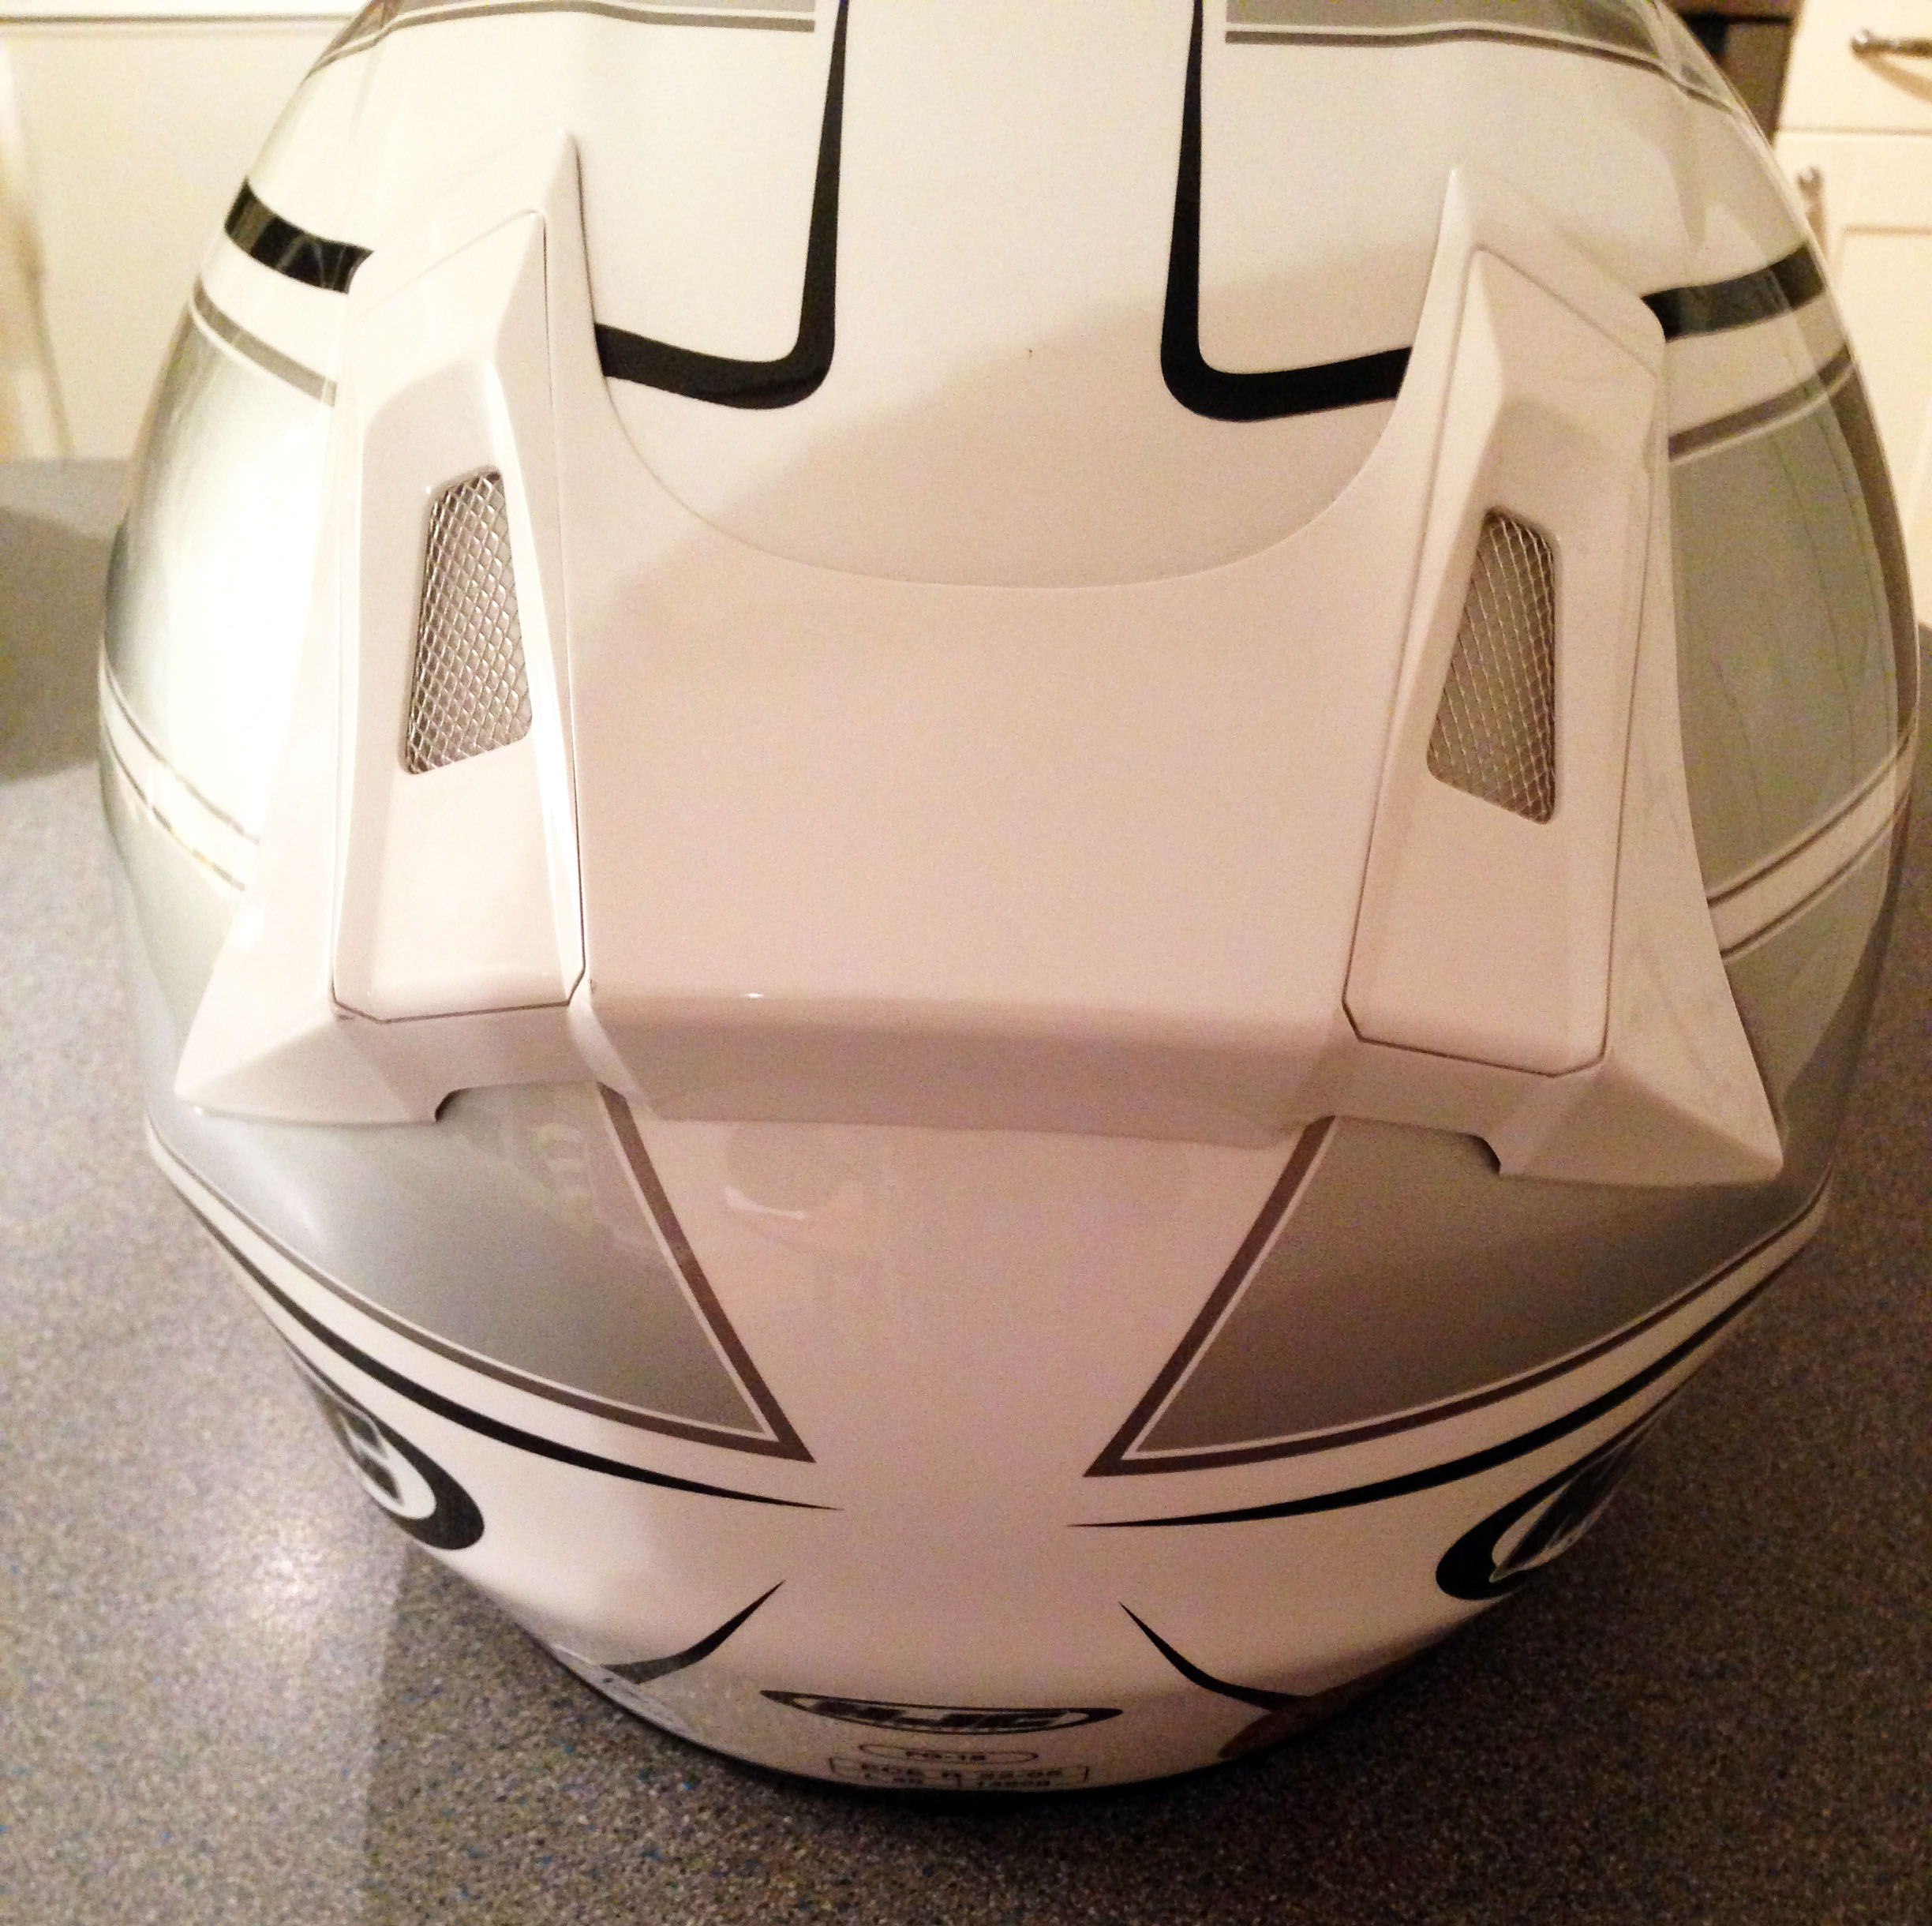 Used: HJC FG-15 helmet